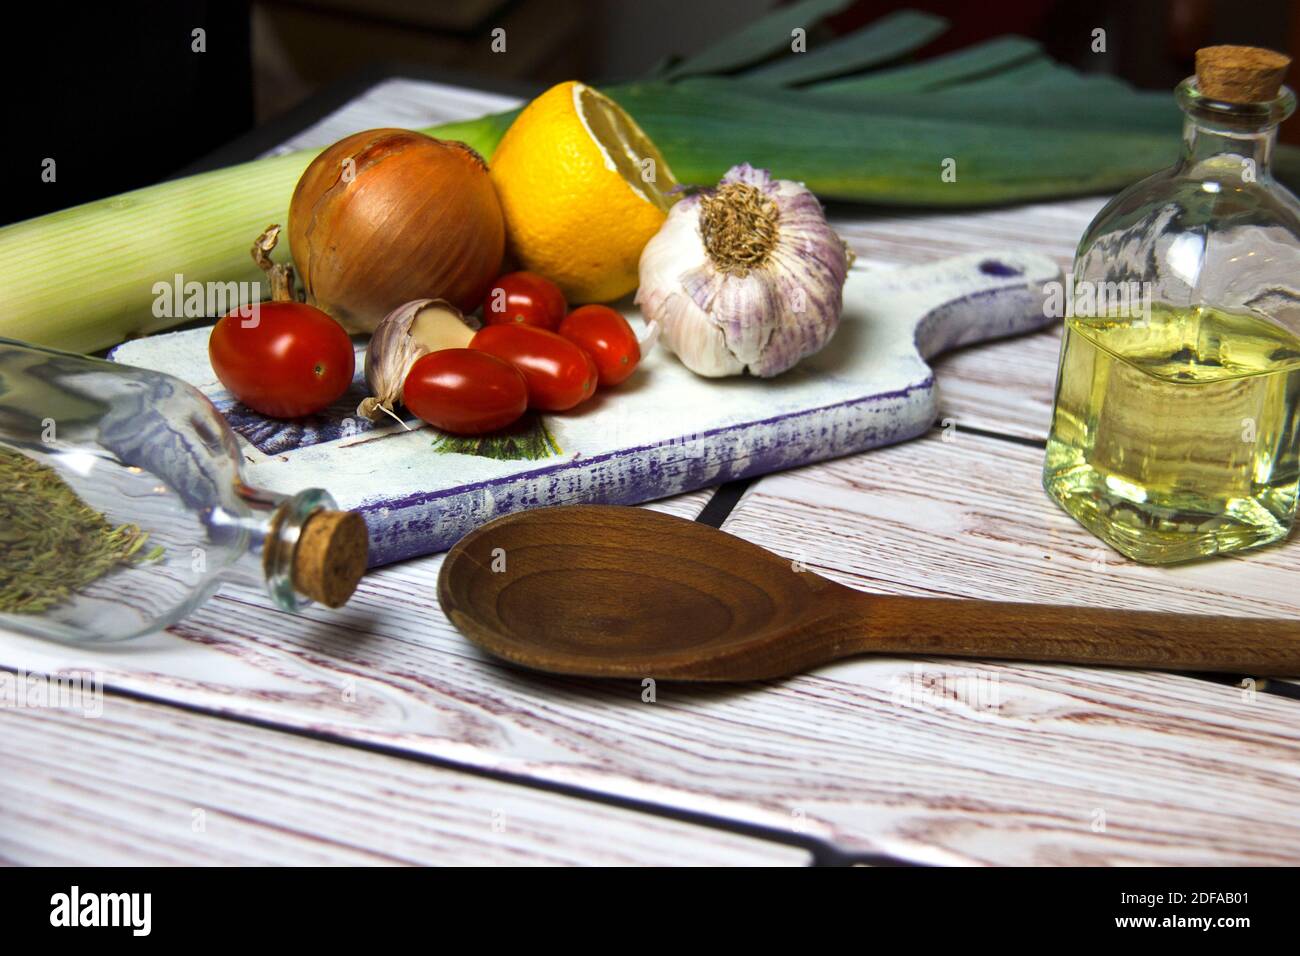 Fond de cuisson. Huile dans une bouteille, ail, oignon, tomates et citron sur une planche à découper. Préparation des aliments. Concept de saine alimentation. Banque D'Images